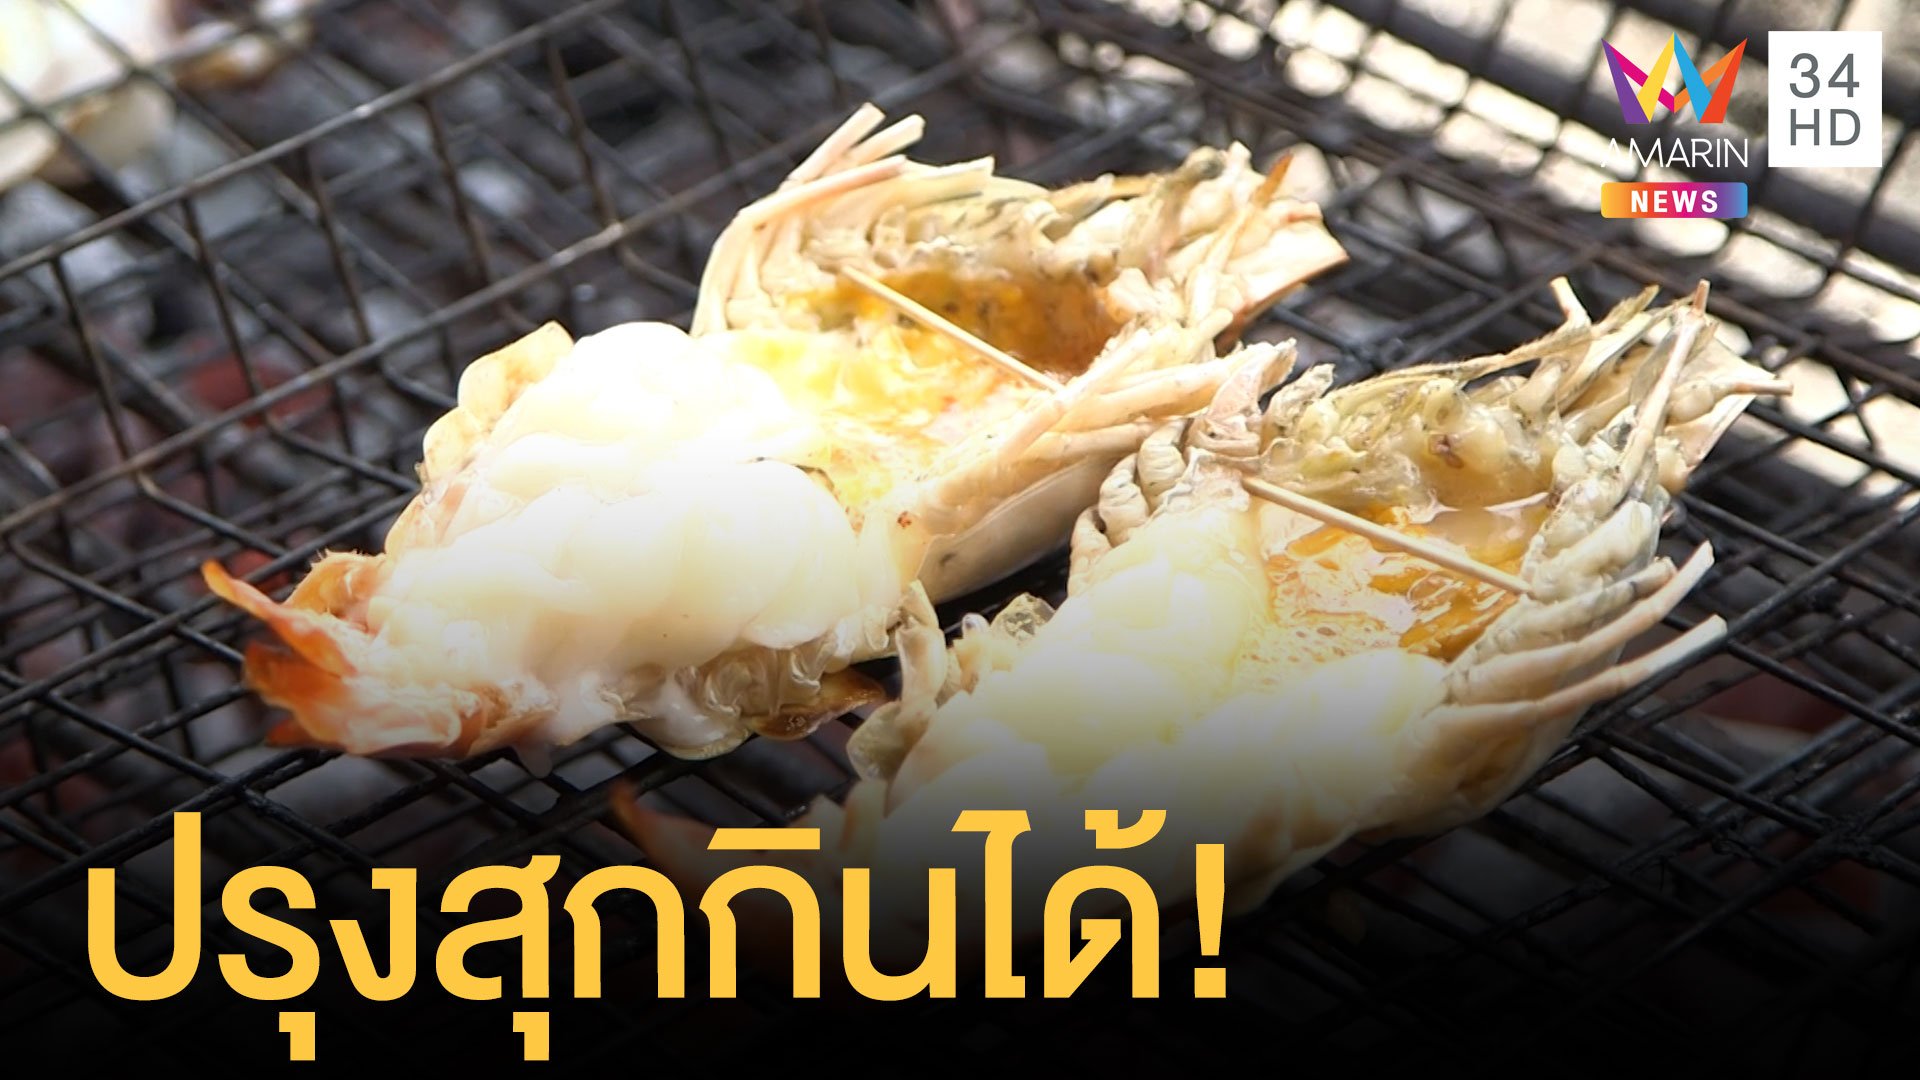 อาหารทะเลขายไม่ออก สปป.ลาวห้ามนำเข้าอาหารจากไทยกลัวปนโควิด | ข่าวอรุณอมรินทร์ | 24 ธ.ค. 63 | AMARIN TVHD34